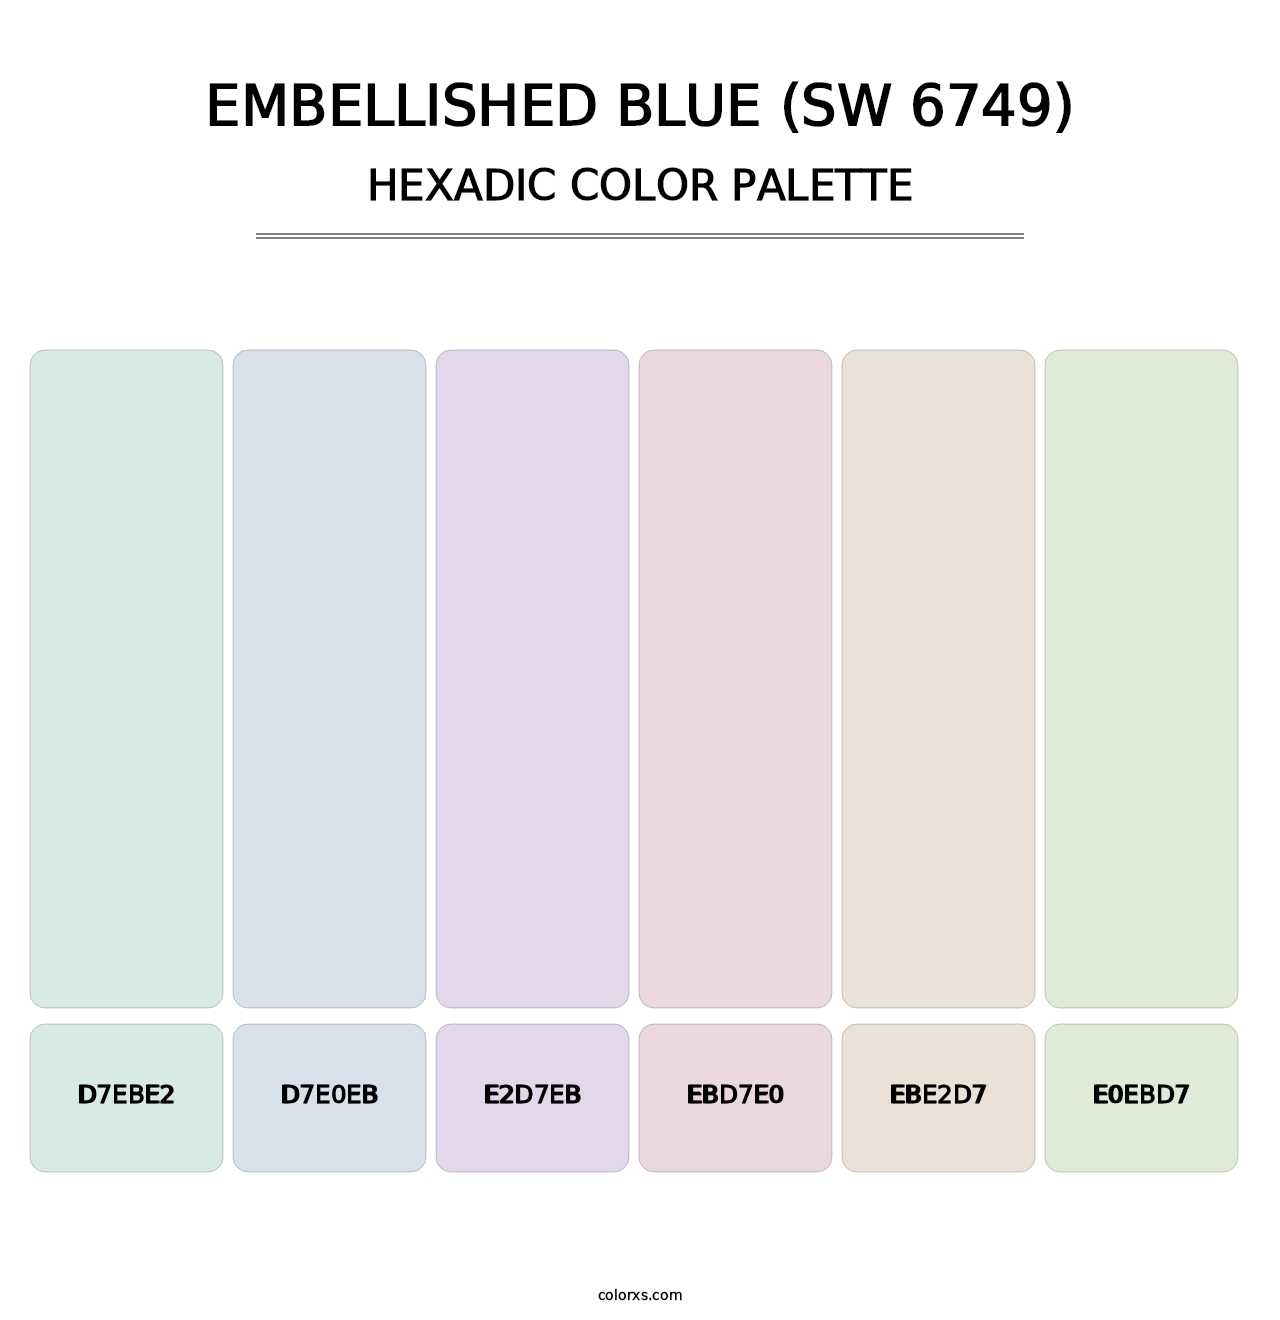 Embellished Blue (SW 6749) - Hexadic Color Palette